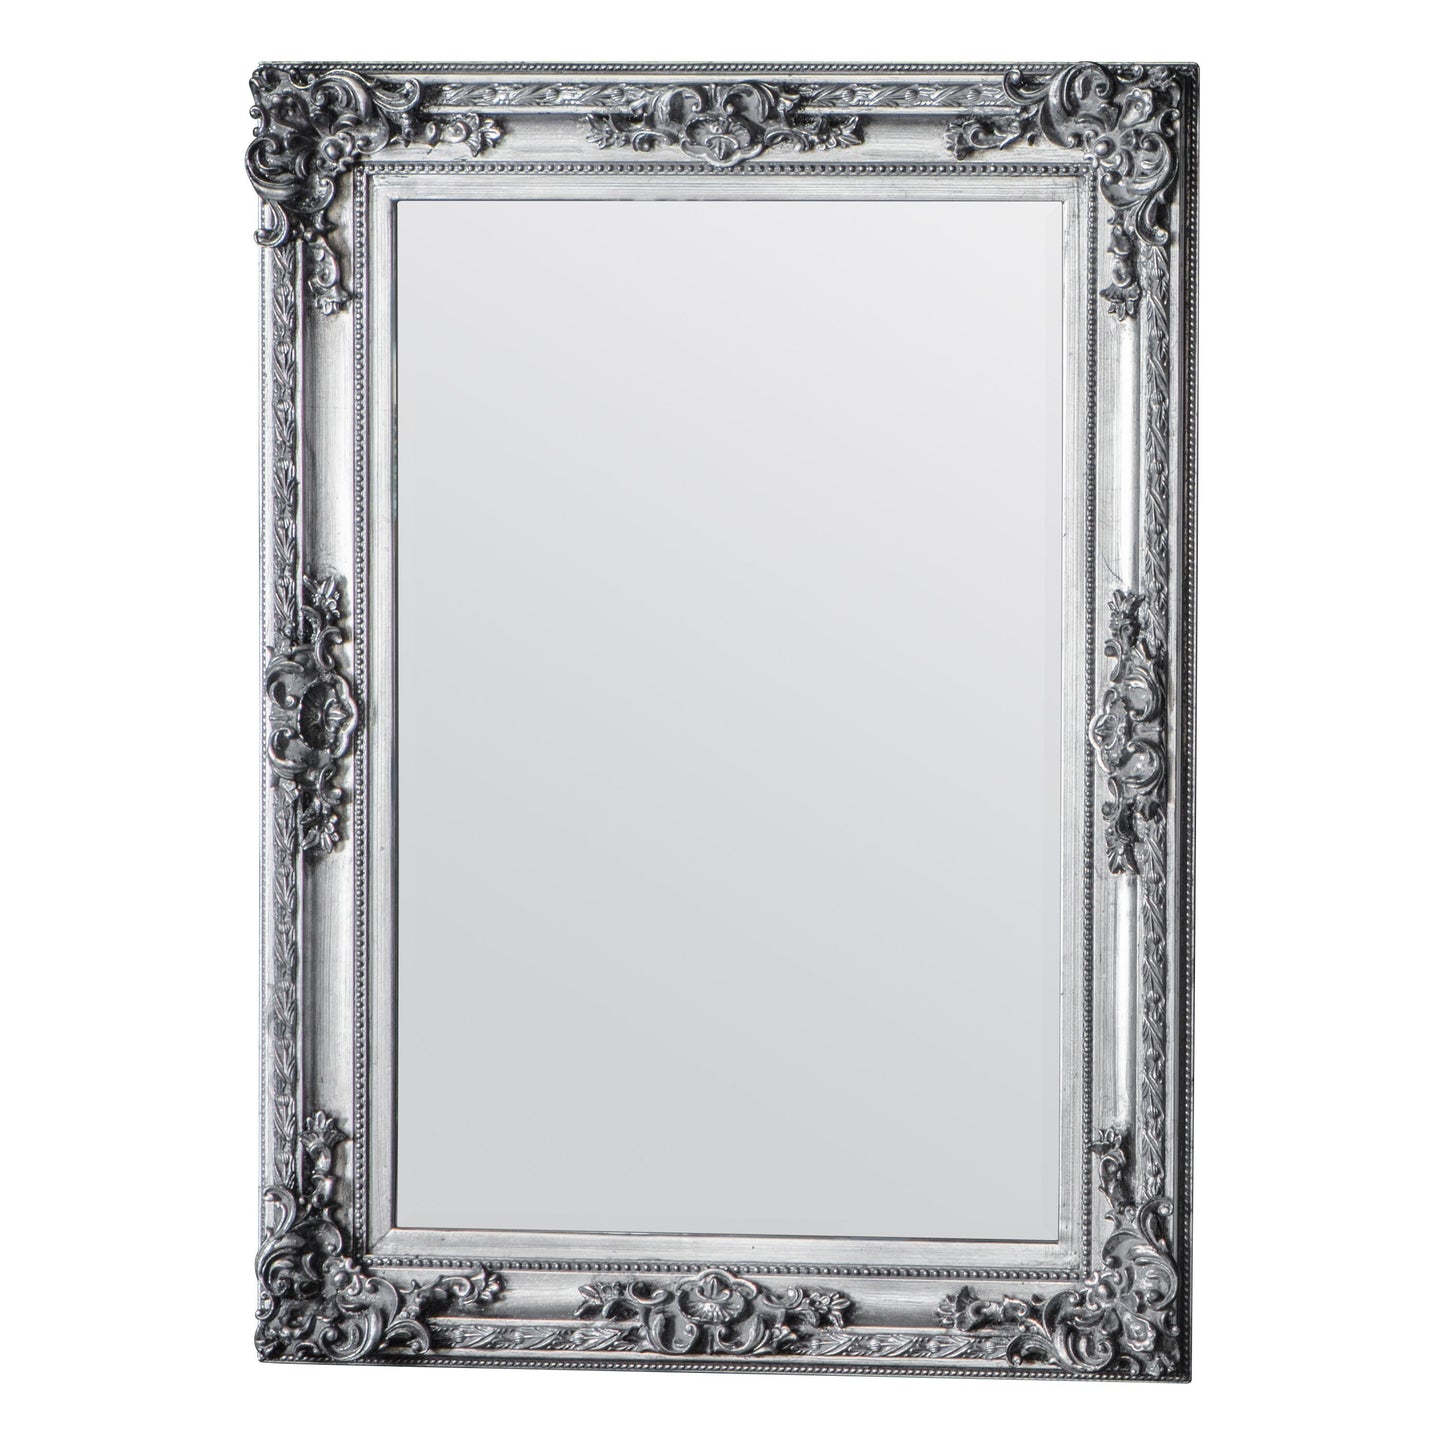 Gallery Interiors Altori Rectangle Mirror in Silver